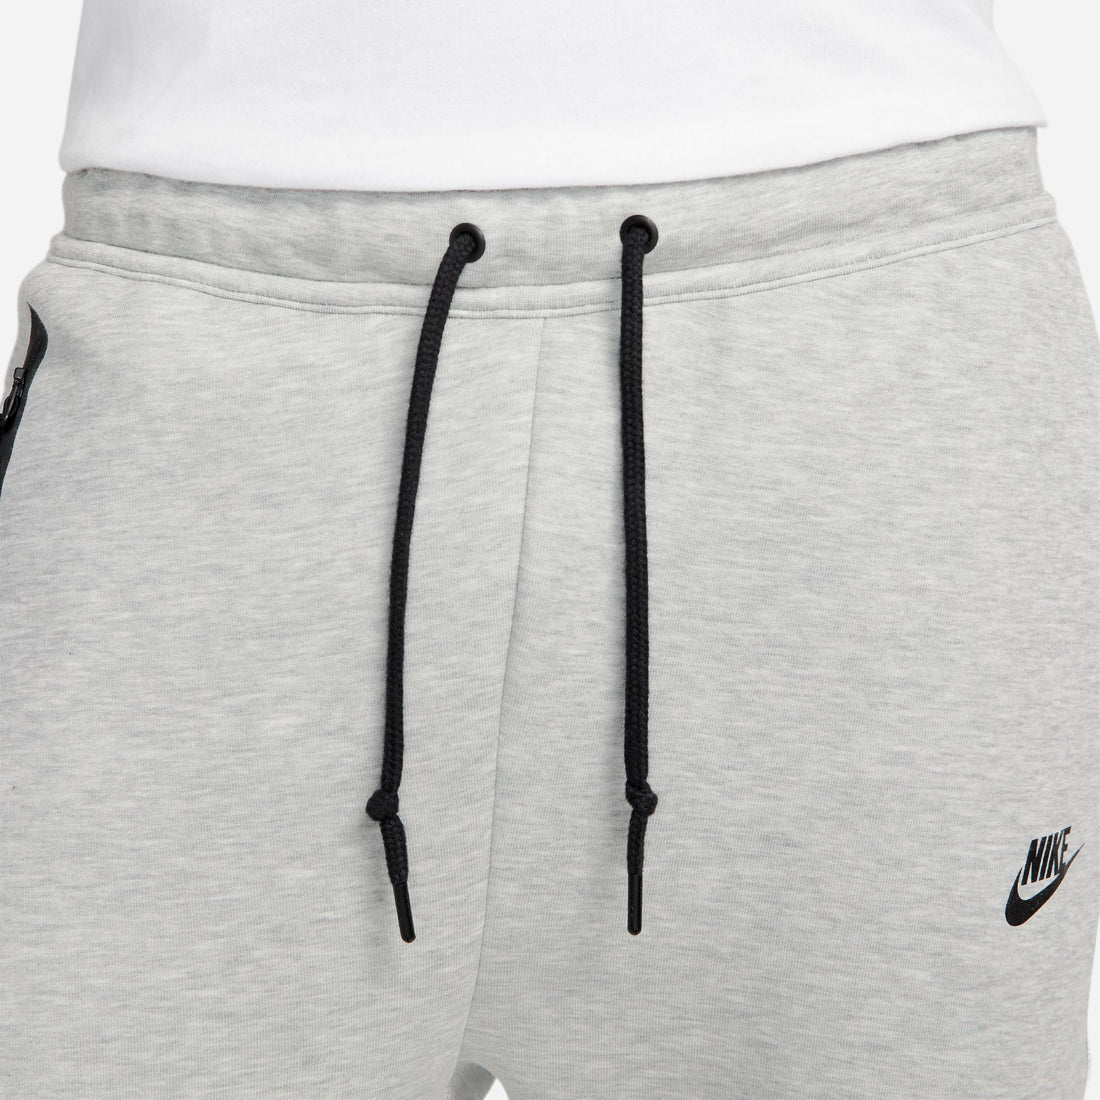 Nike Sportswear Tech Fleece Jogger Pants (Heather/Black)